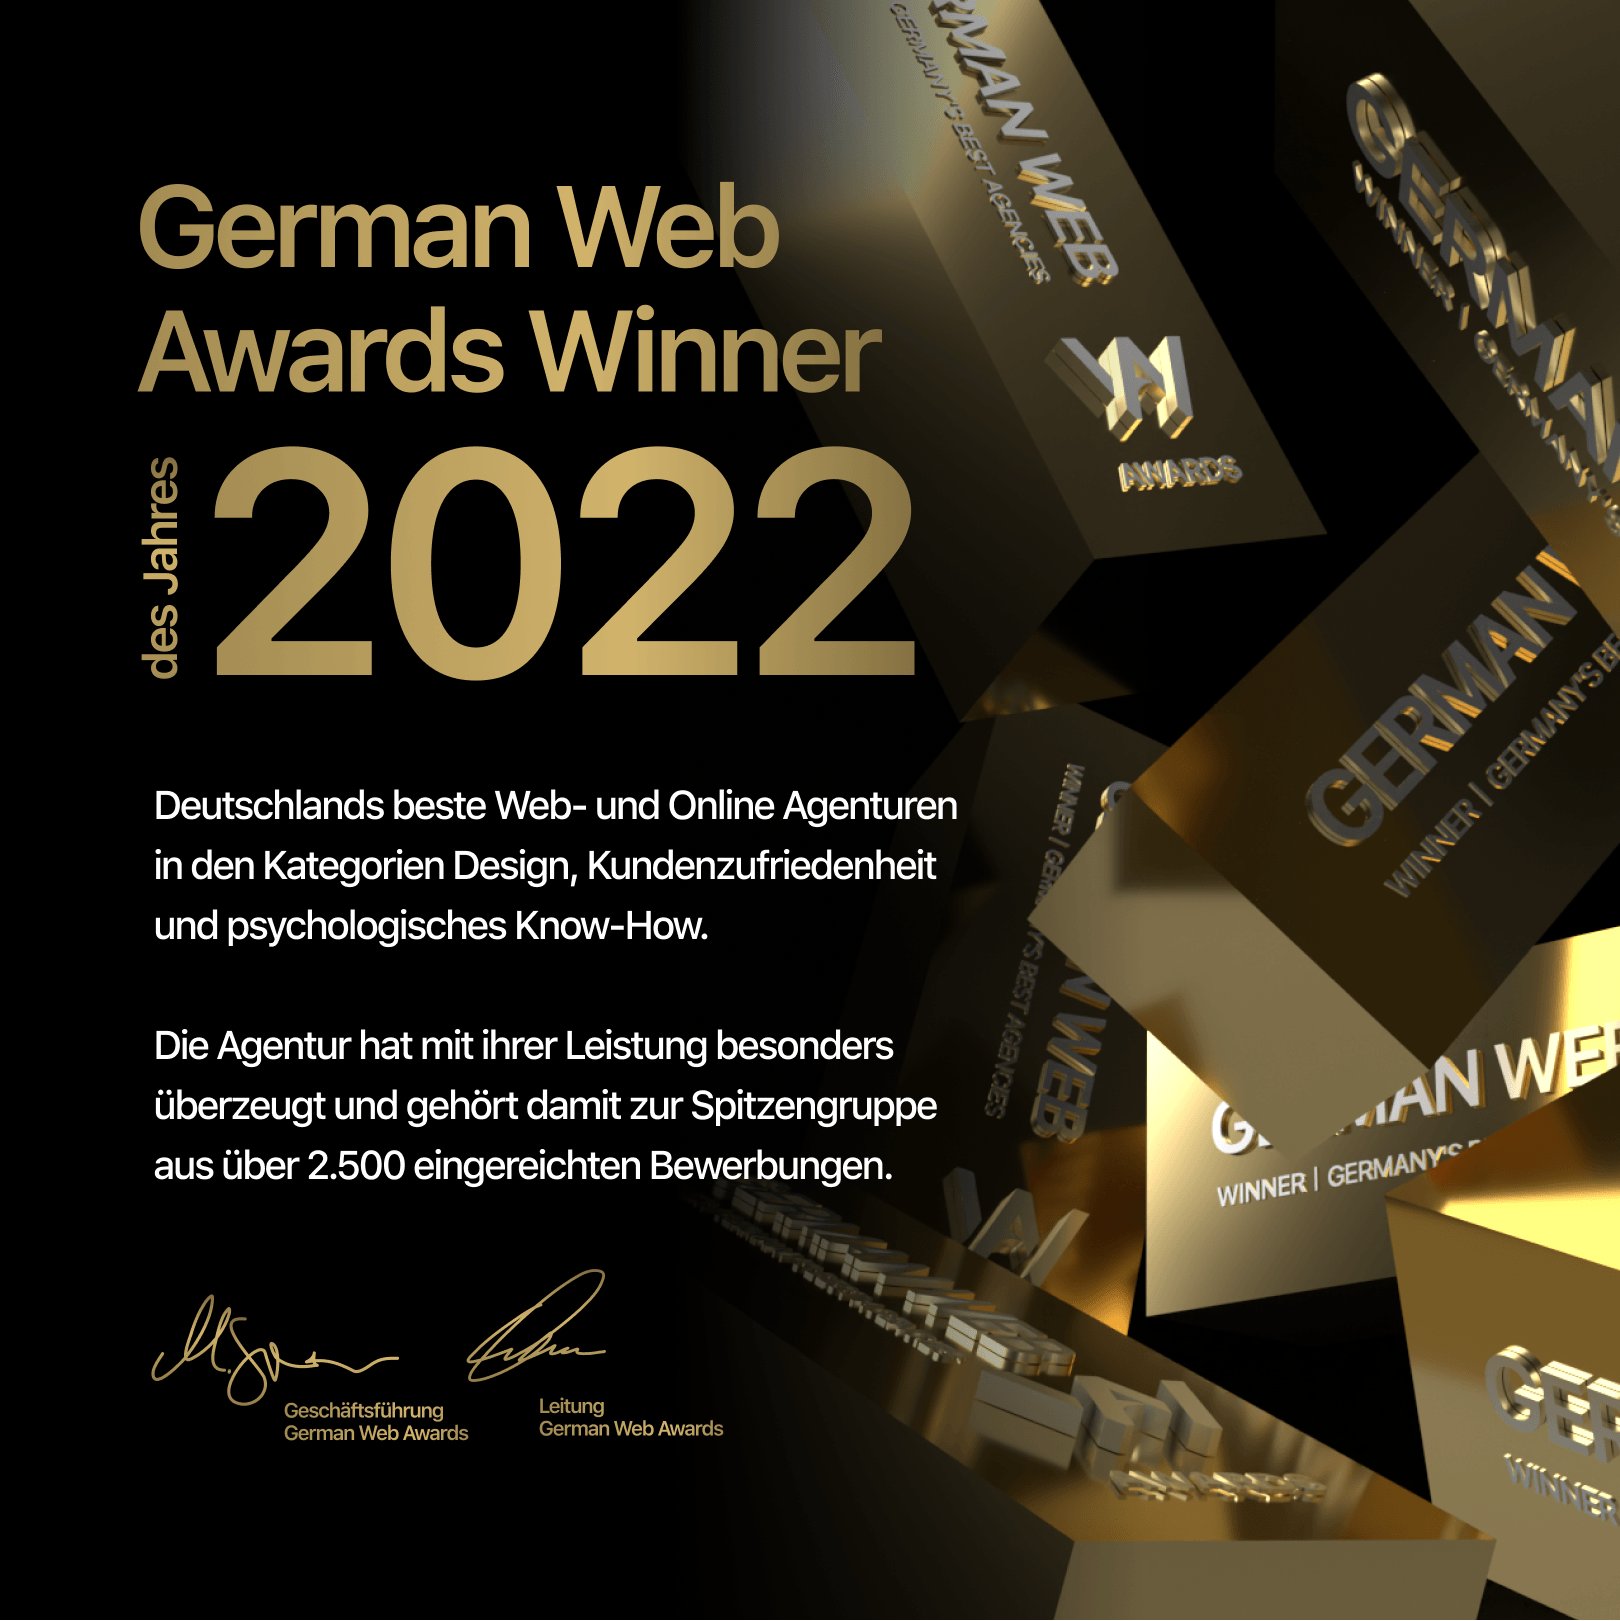 Golden Web Age gewinnt German Web Awards – Wir sind ausgezeichnet!, Golden Web Age GmbH